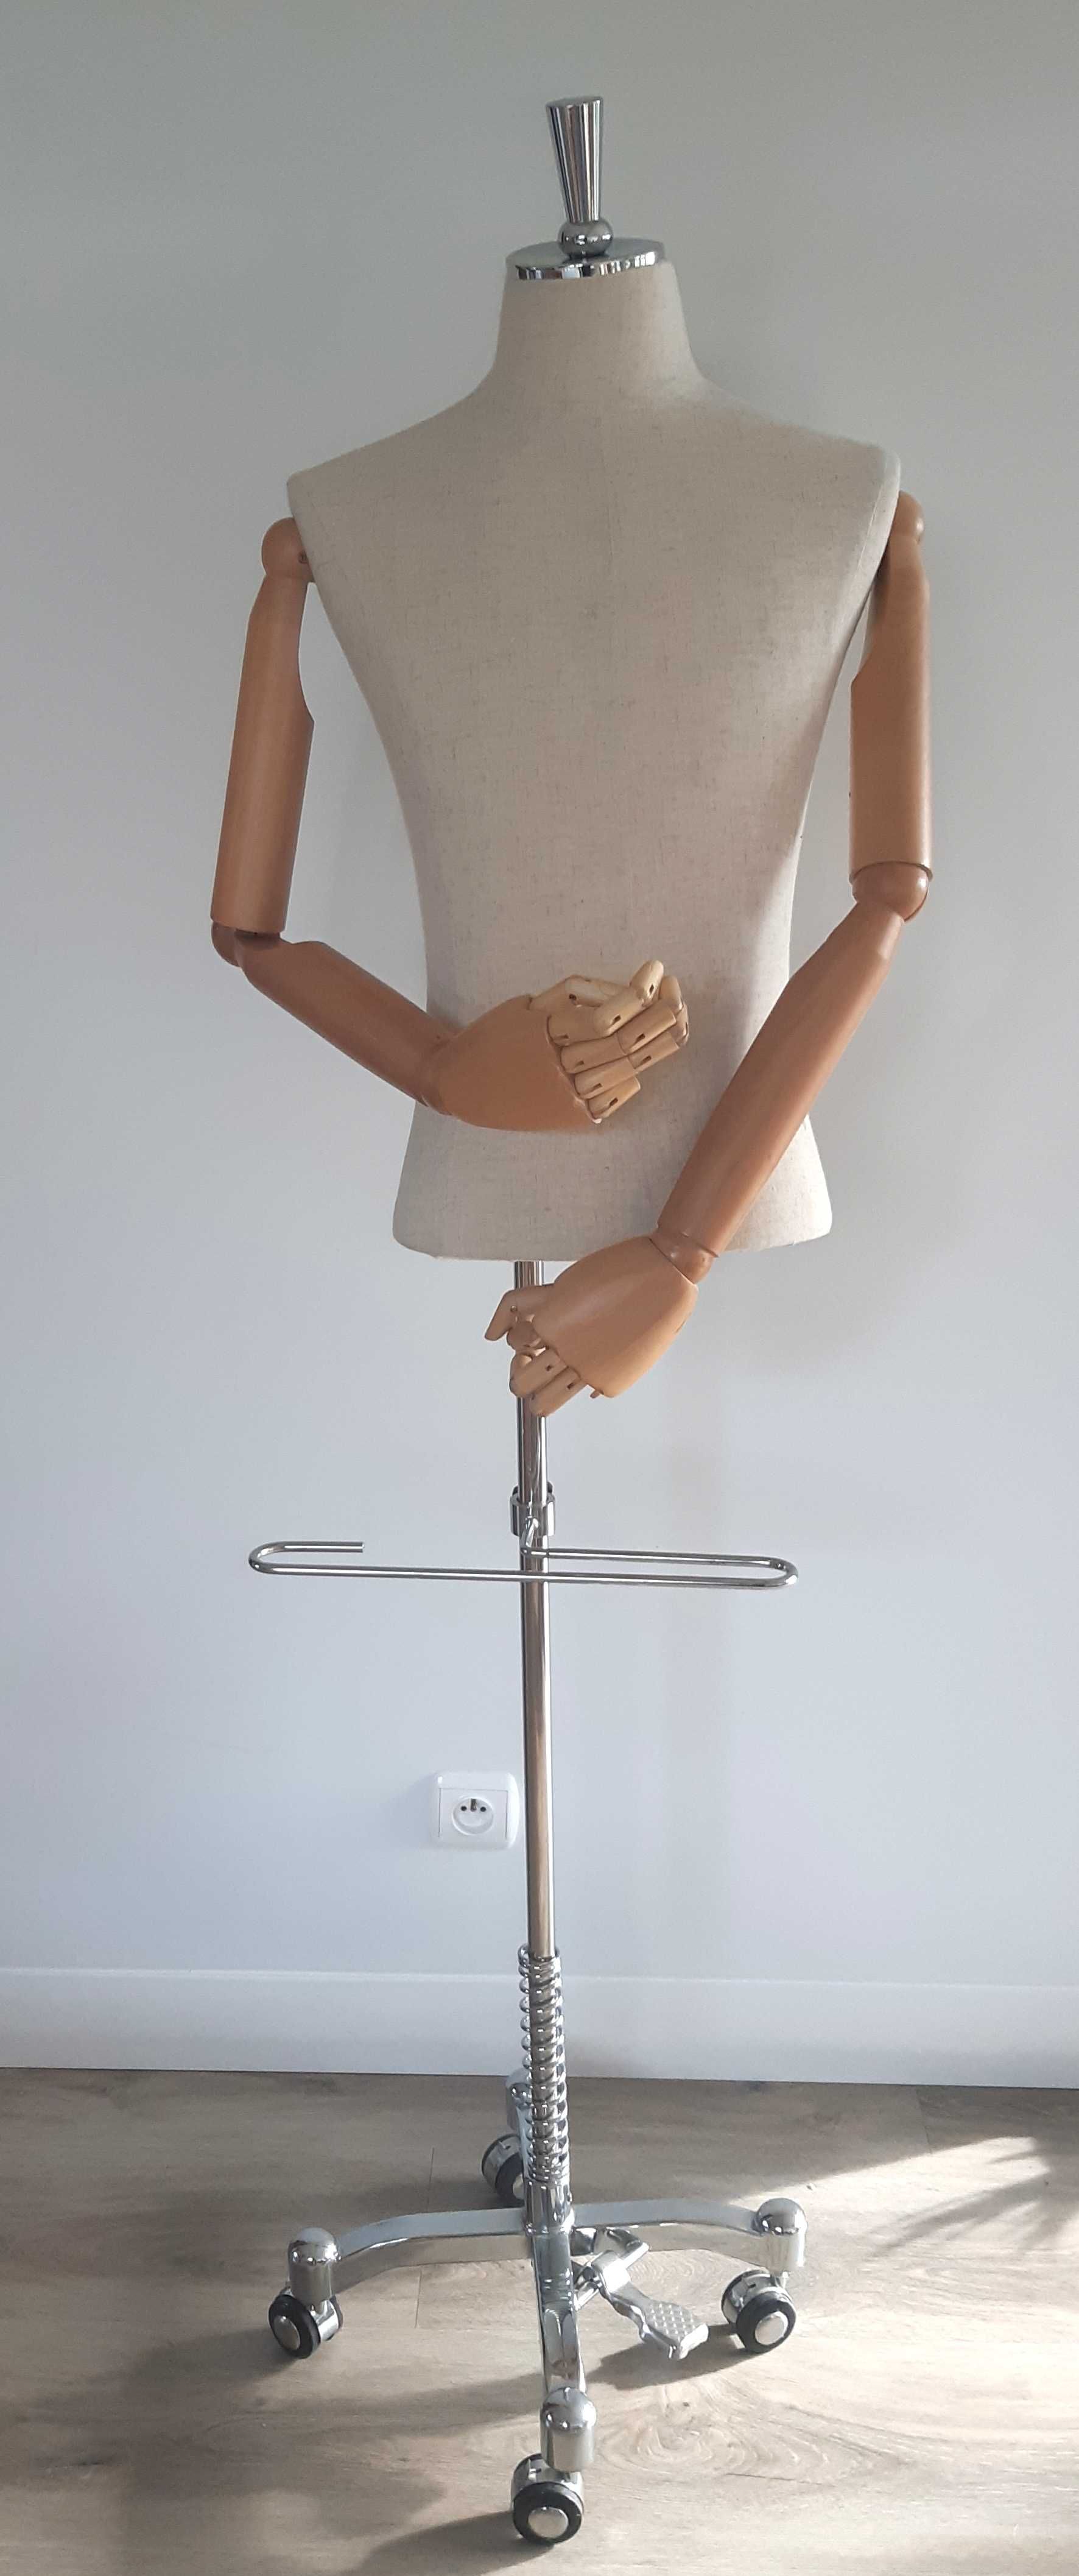 Manekin wystawowy na stojaku na kołach z rękoma ruchomymi